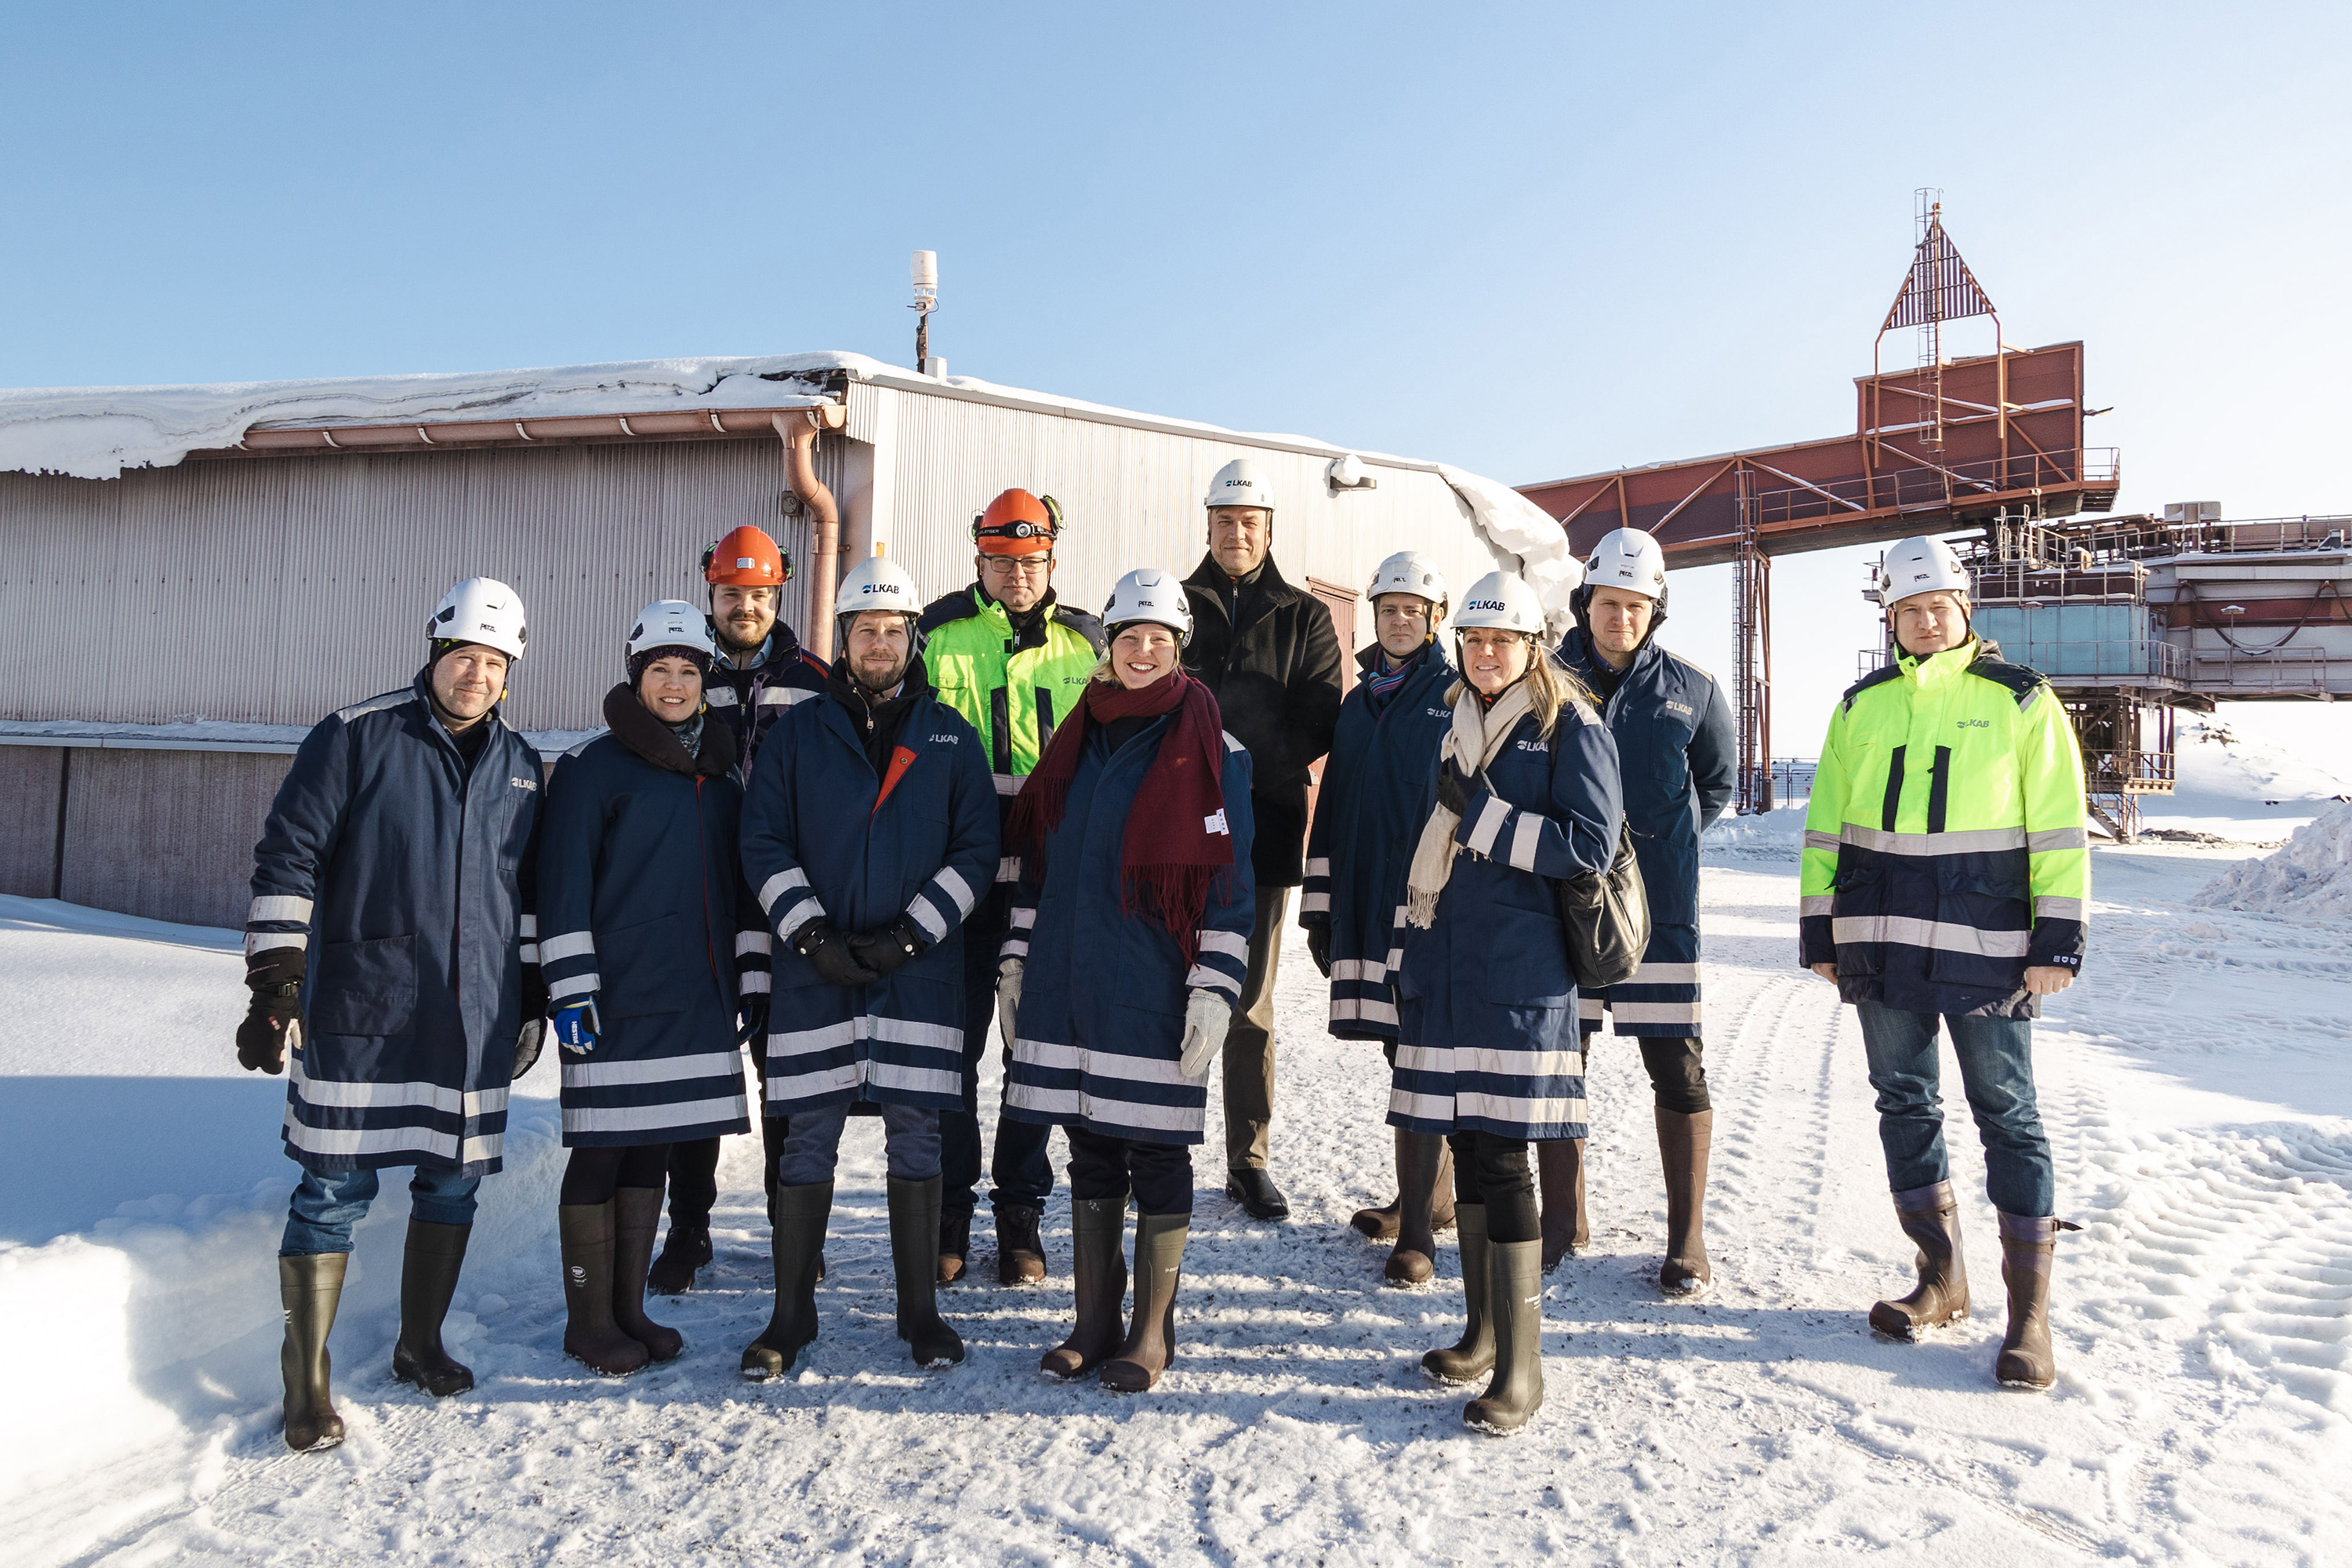 Representanter från LKAB, Luleå kommun och Luleå Business Region på rundvandring på LKAB:s område på Svartön.